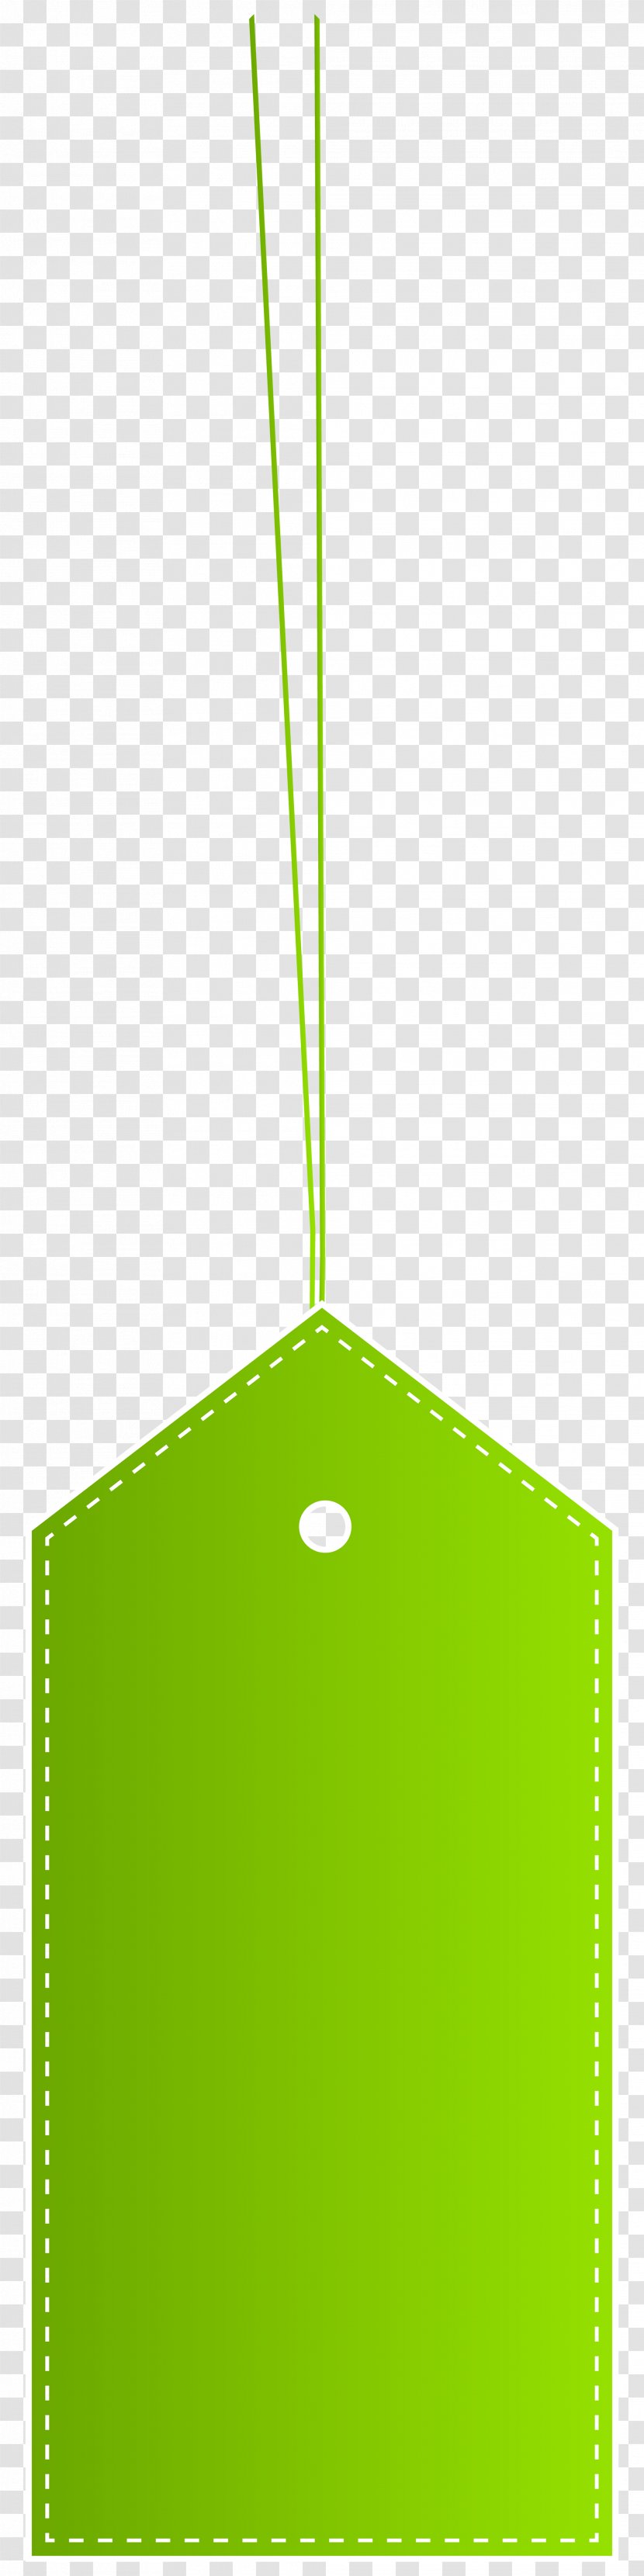 Art Desktop Wallpaper Clip - Label - Green Apple Slice Transparent PNG